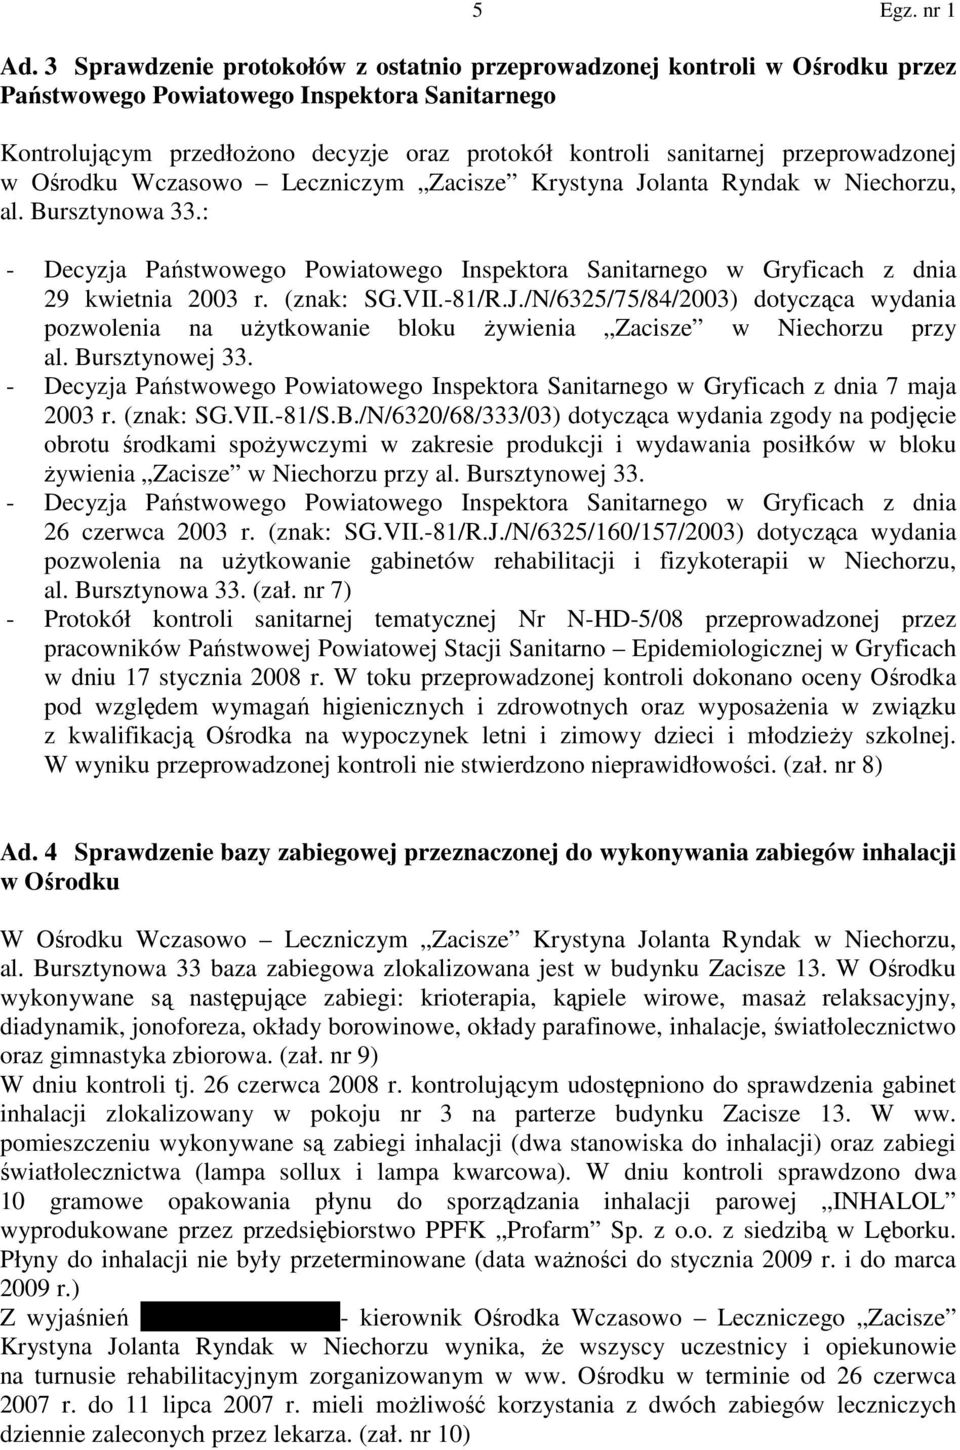 : - Decyzja Państwowego Powiatowego Inspektora Sanitarnego w Gryficach z dnia 29 kwietnia 2003 r. (znak: SG.VII.-81/R.J.